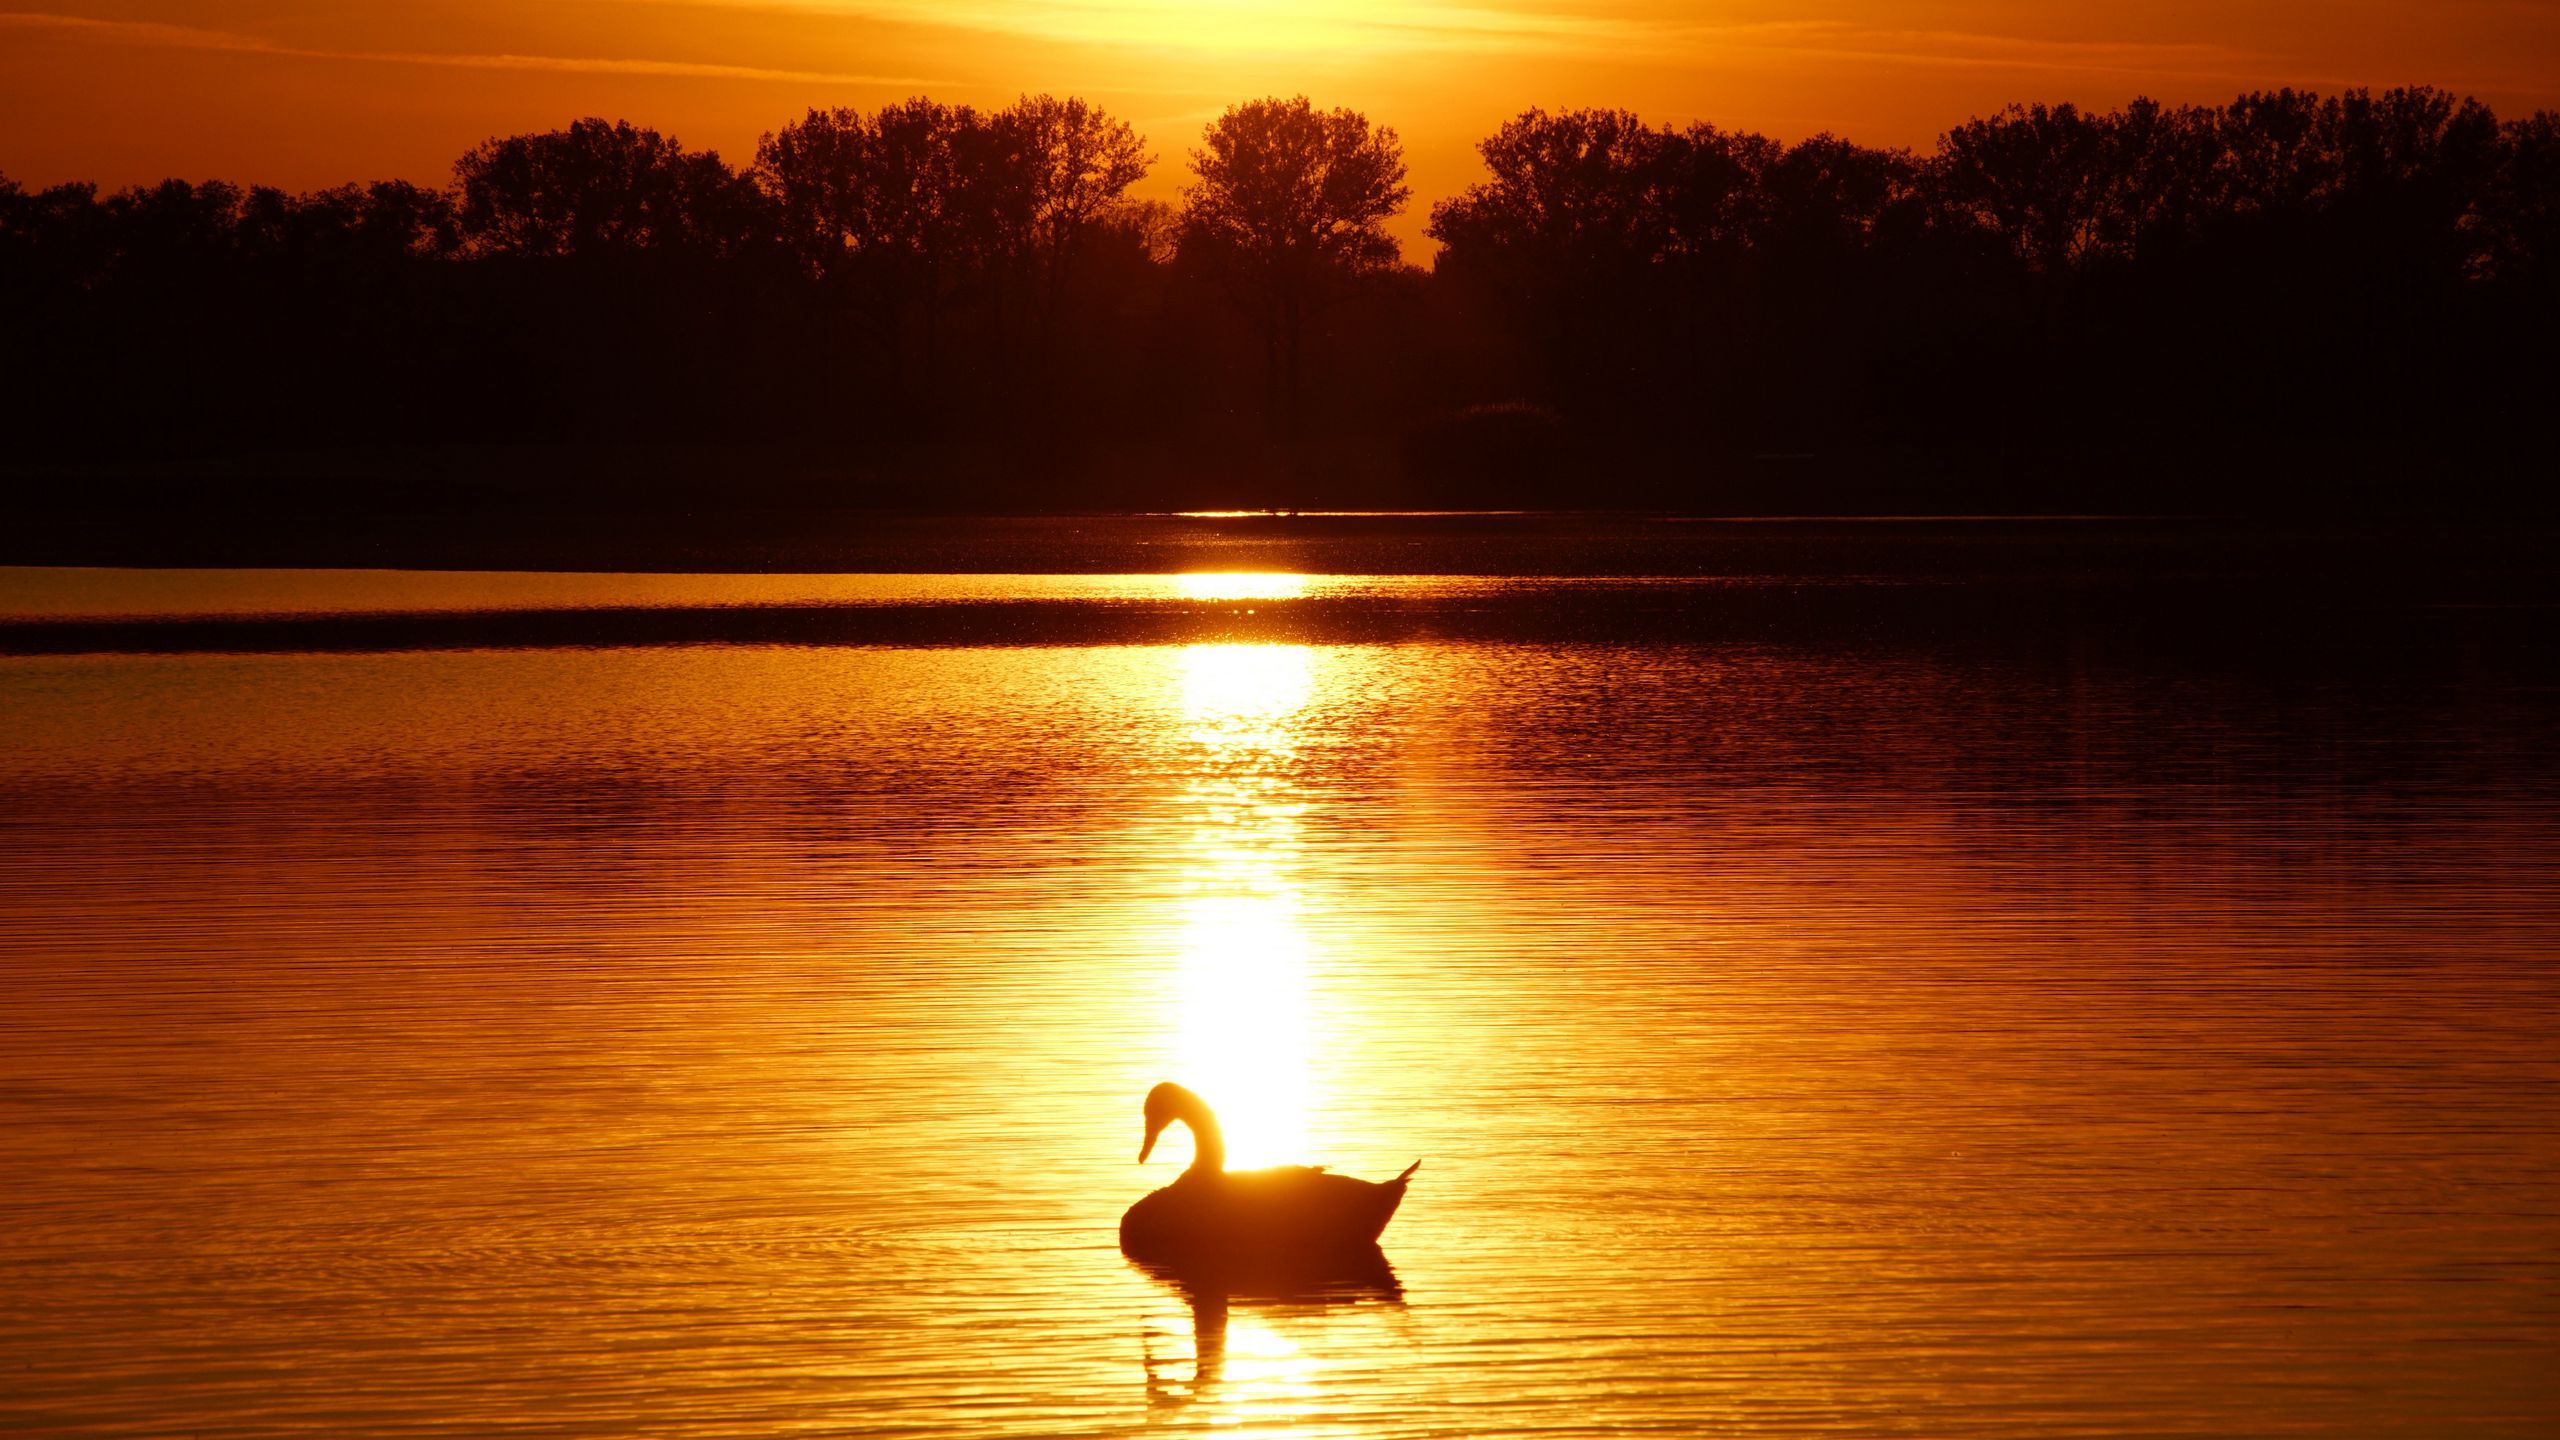 Download wallpaper 2560x1440 swan, sunset, pond, trees, horizon